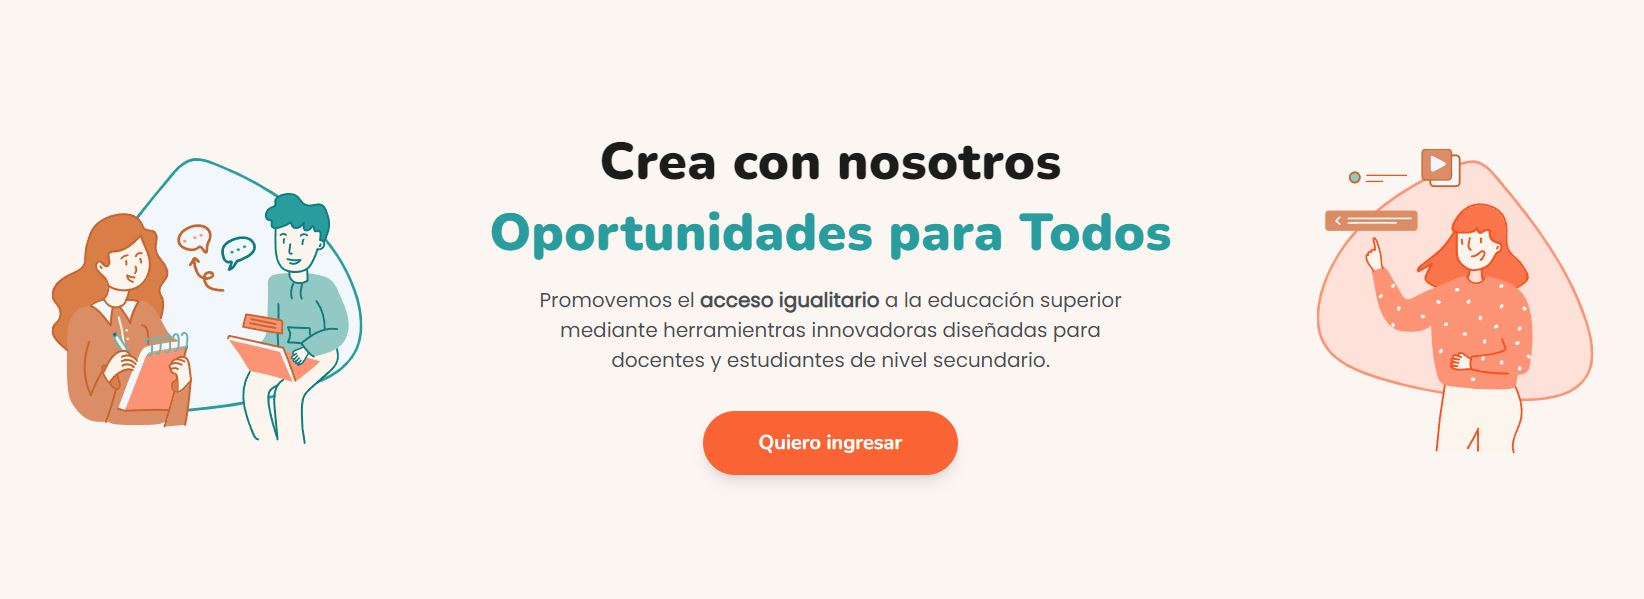 PRESENTACIÓN E INVITACIÓN A PLATAFORMA WEB “OPORTUNIDADES PARA TODOS”.